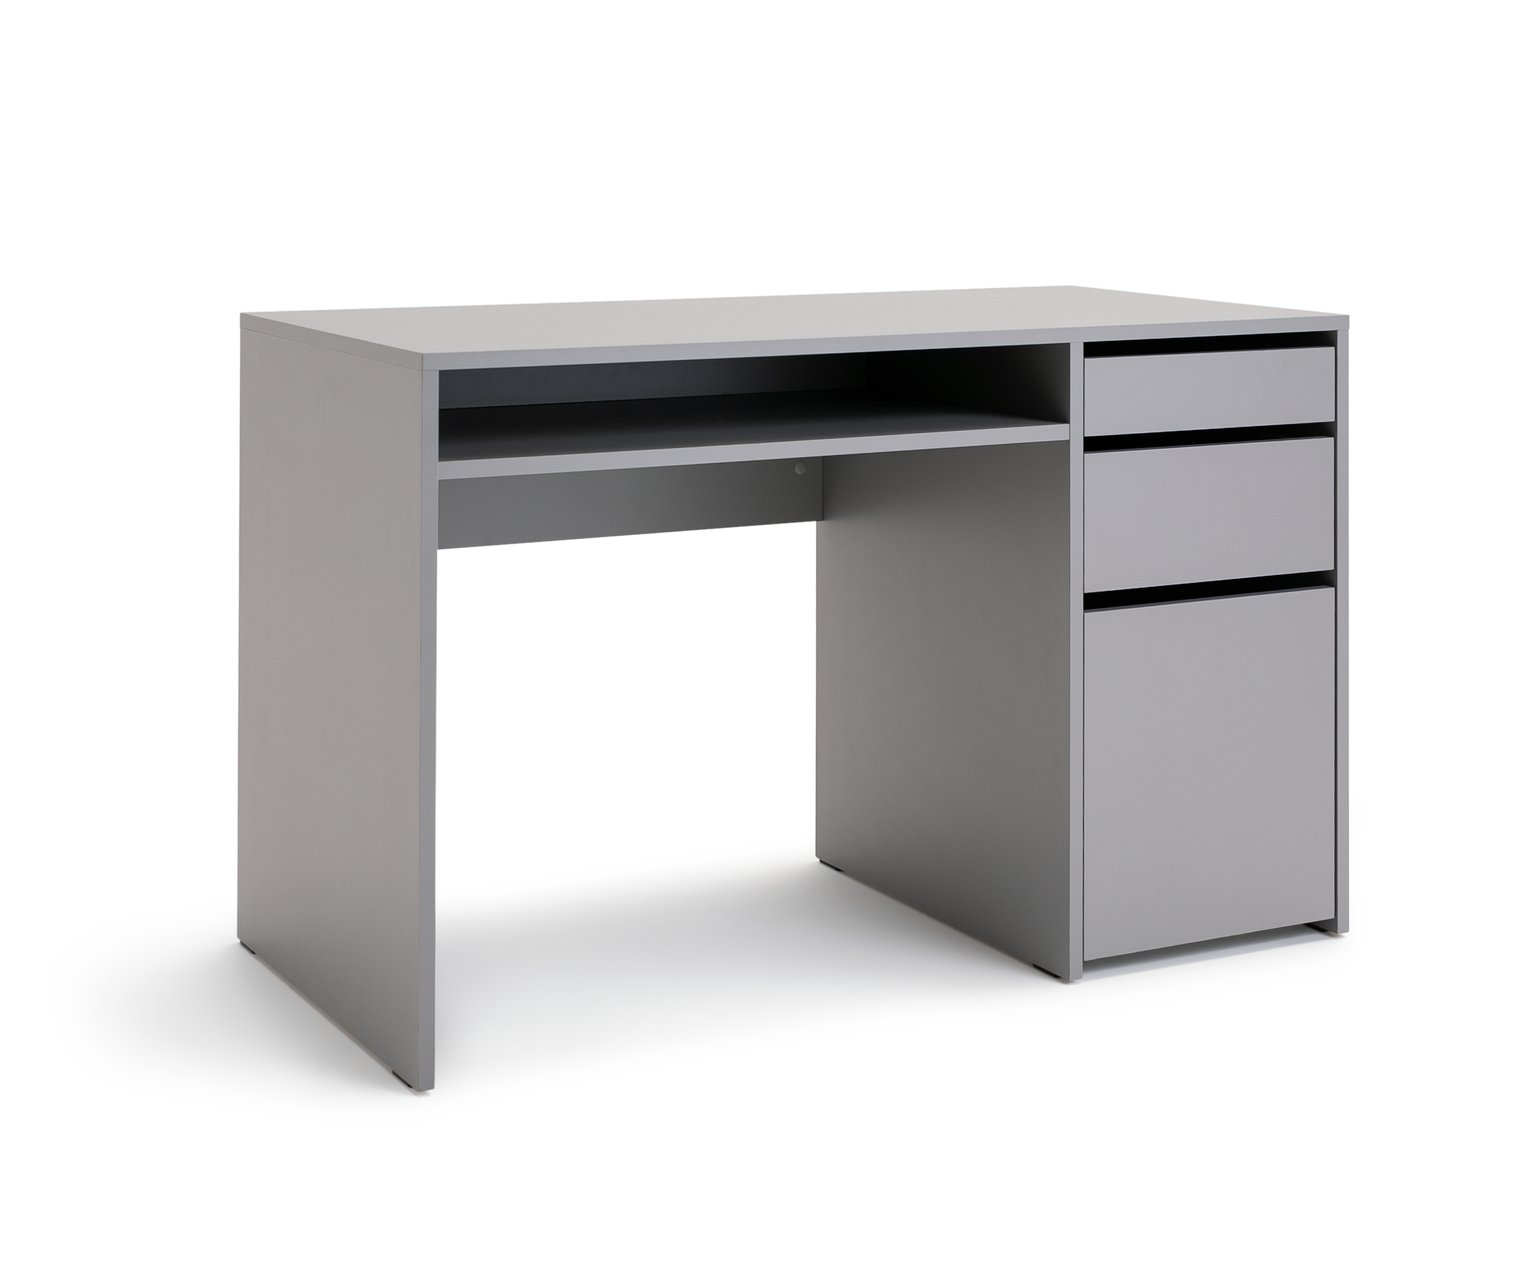 Habitat Pepper 2 Drawer Pedestal Desk - Grey